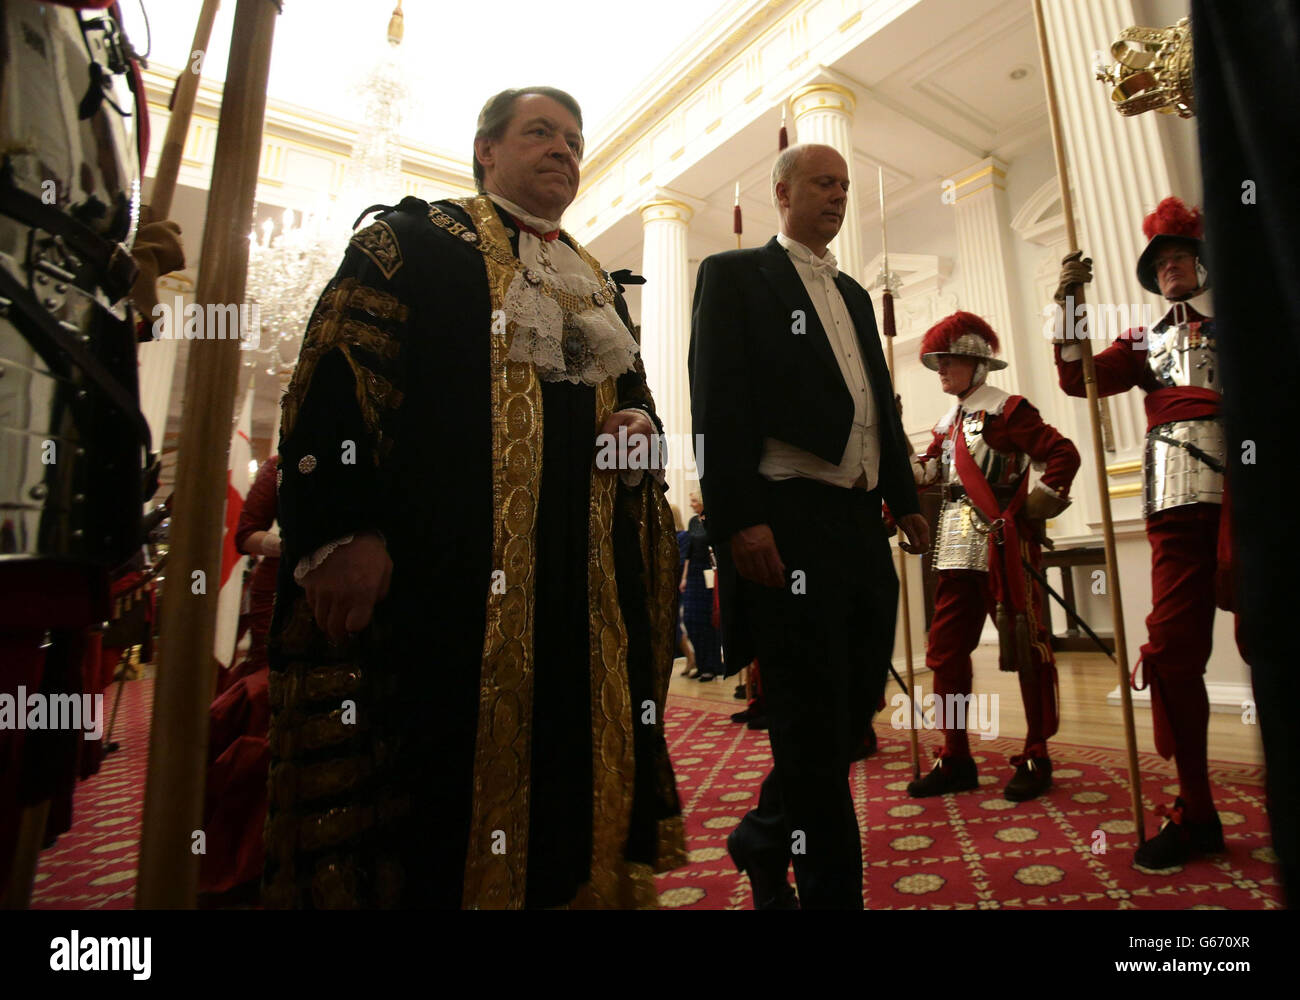 Alderman Roger Gifford (a sinistra), il Sindaco del Signore di Londra, e il Segretario della Giustizia Chris Grayling frequentano il Lord Mayor della City of London's Dinner ai Giudici di sua Maestà, alla Mansion House di Londra. Foto Stock